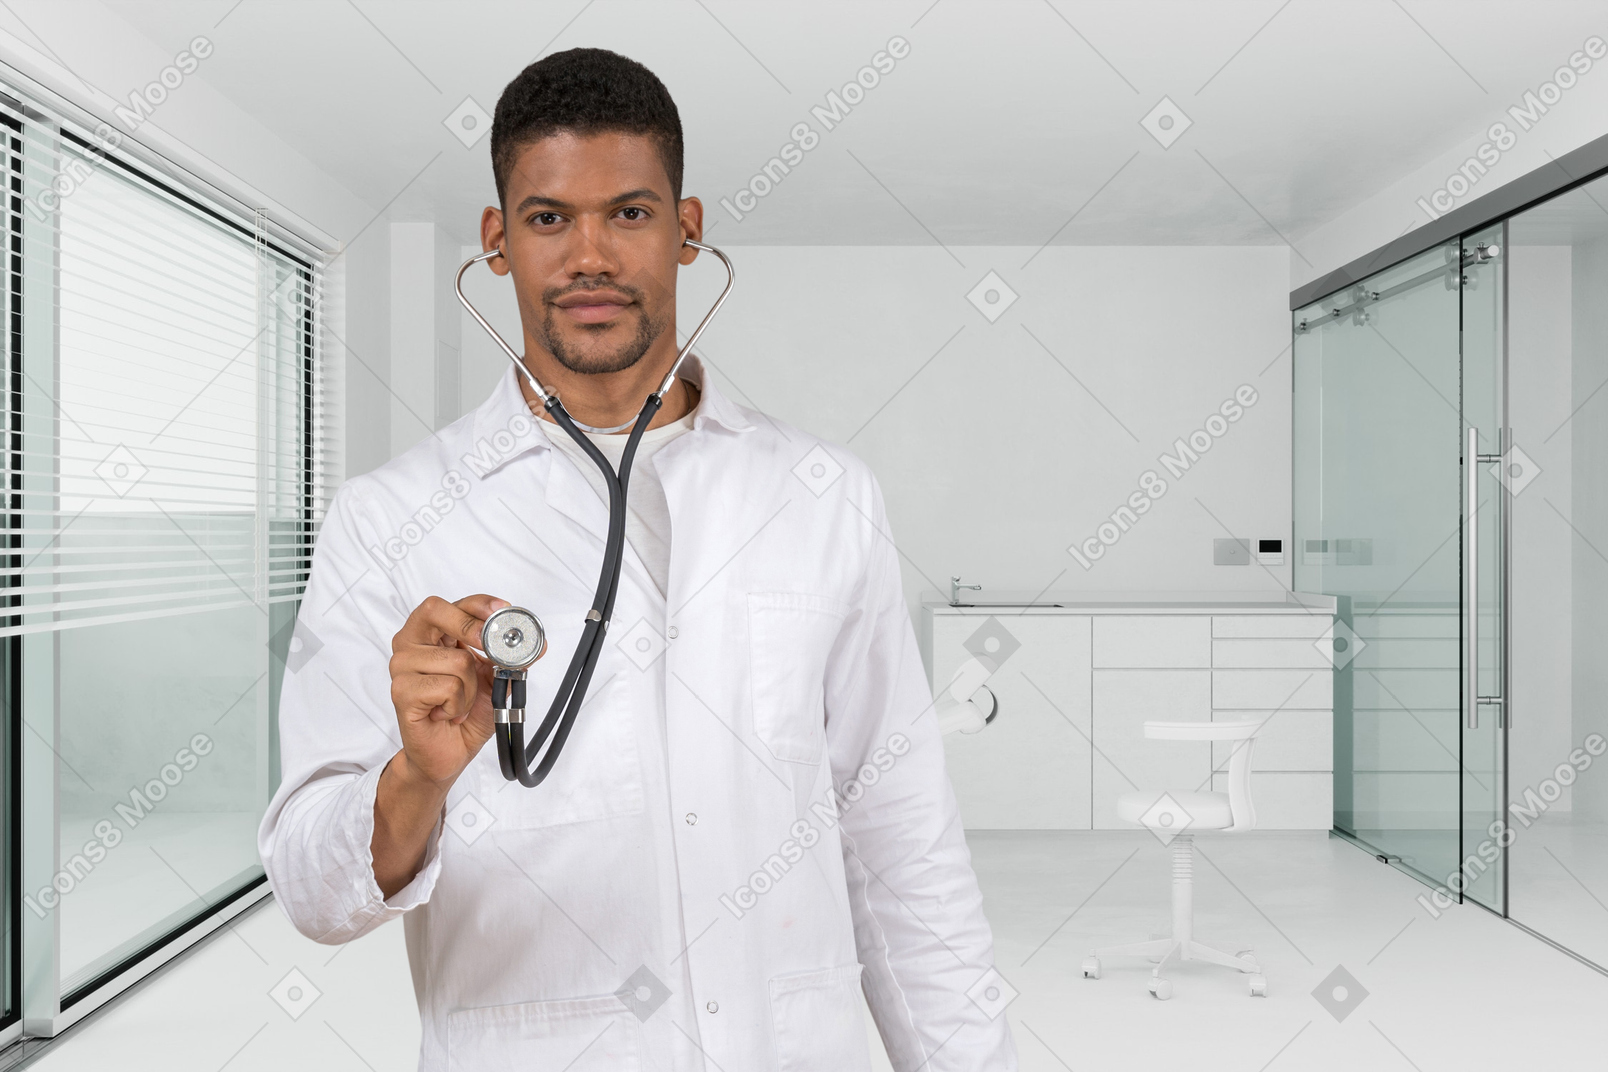 Retrato de un médico varón en una habitación de hospital